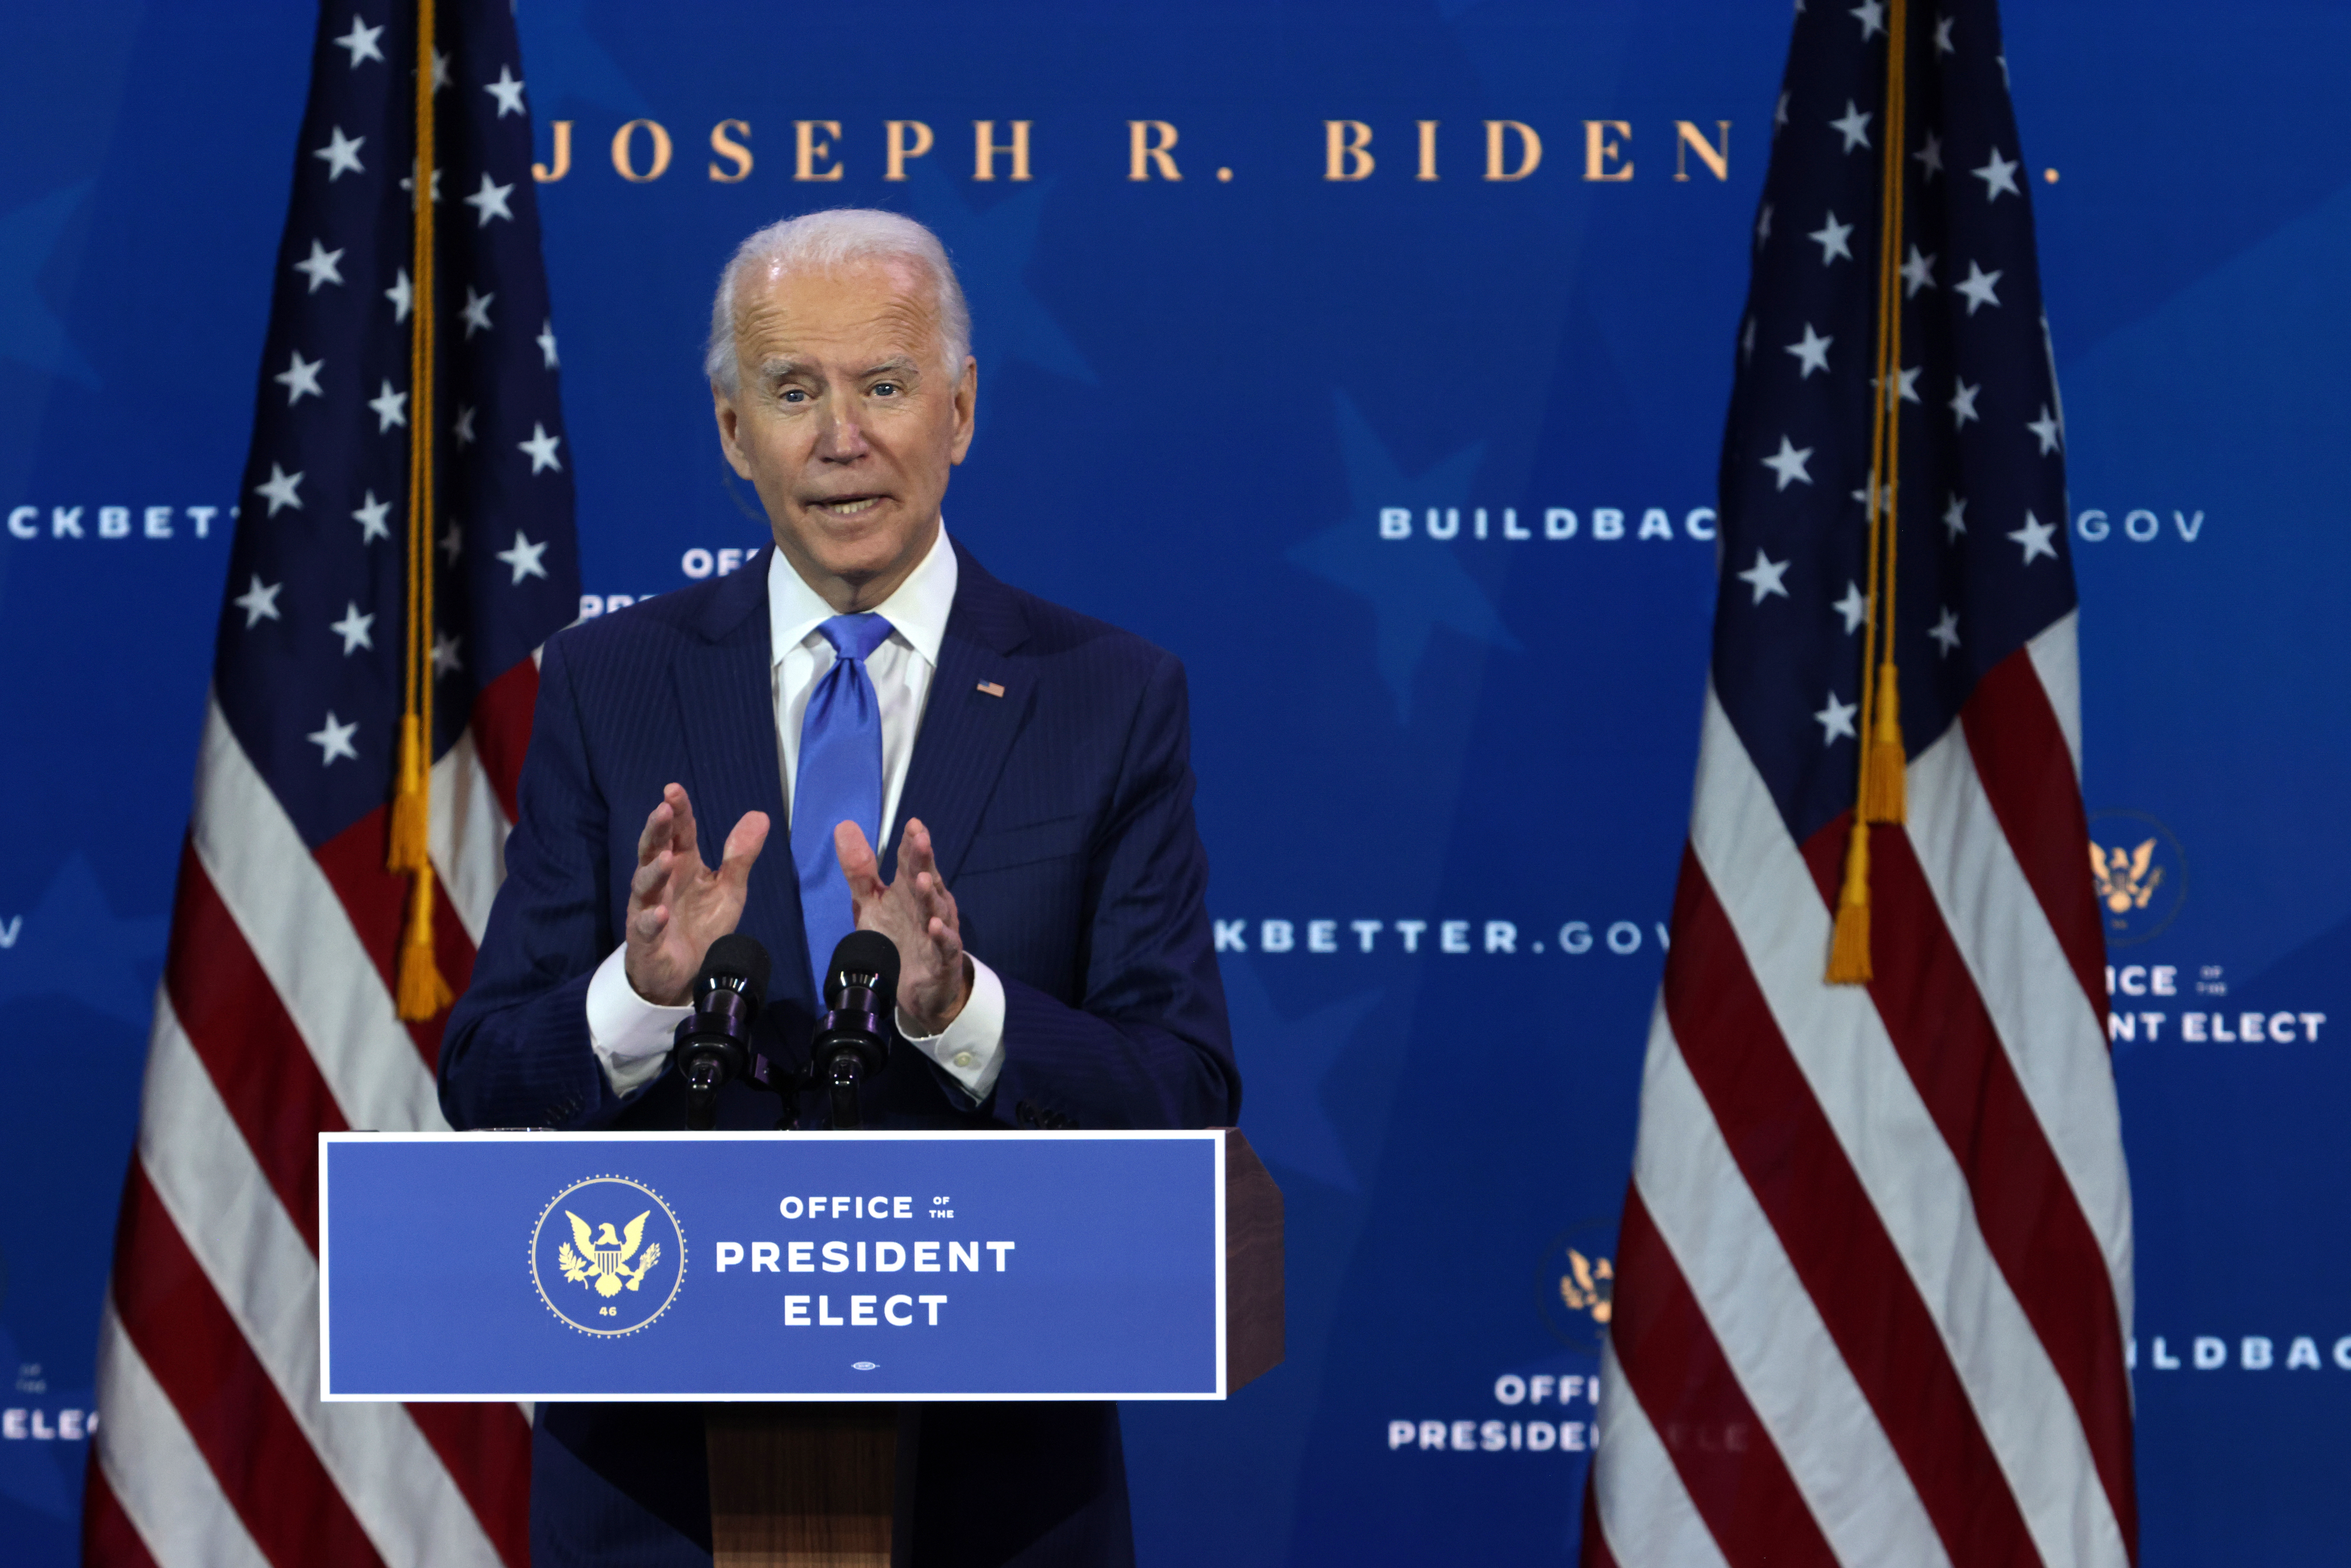 Biden promete que “la ayuda está en camino” al presentar equipo económico contra la crisis